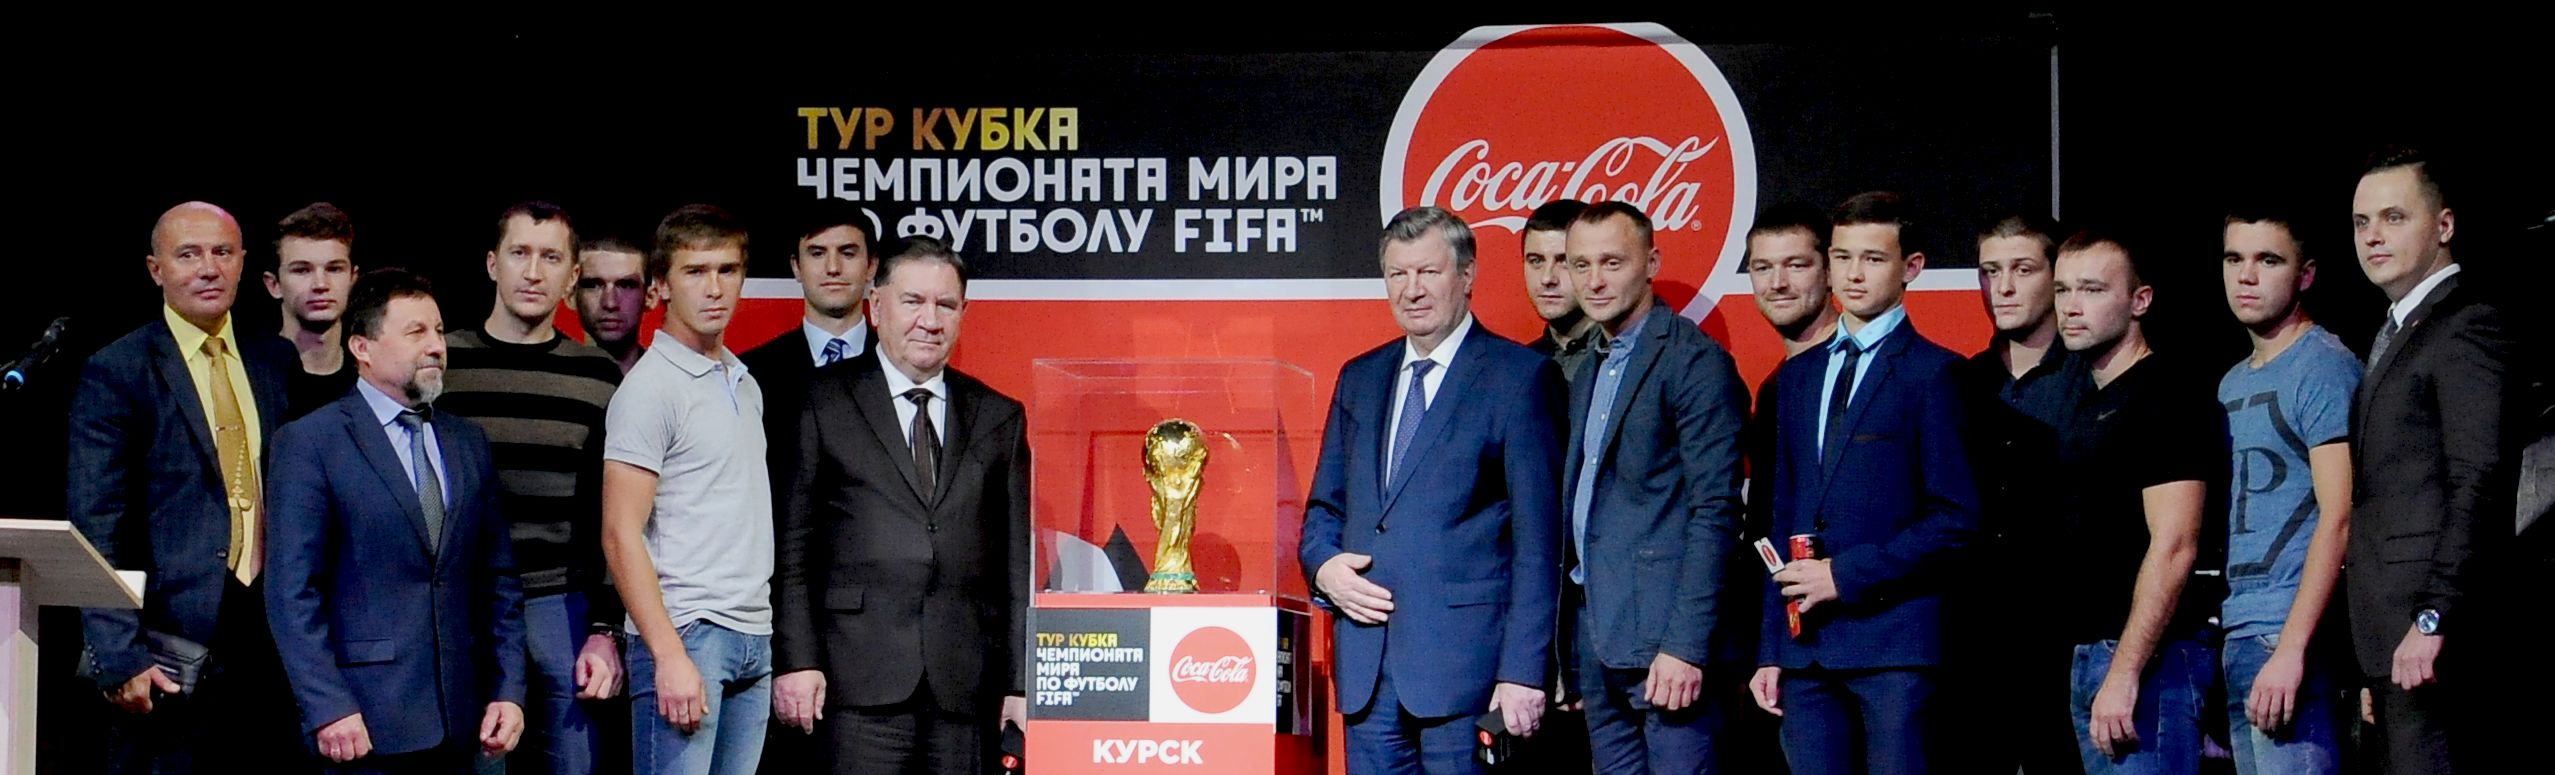 Сегодня Курск торжественно встретил Кубок чемпионата мира по футболу ФИФА 2018